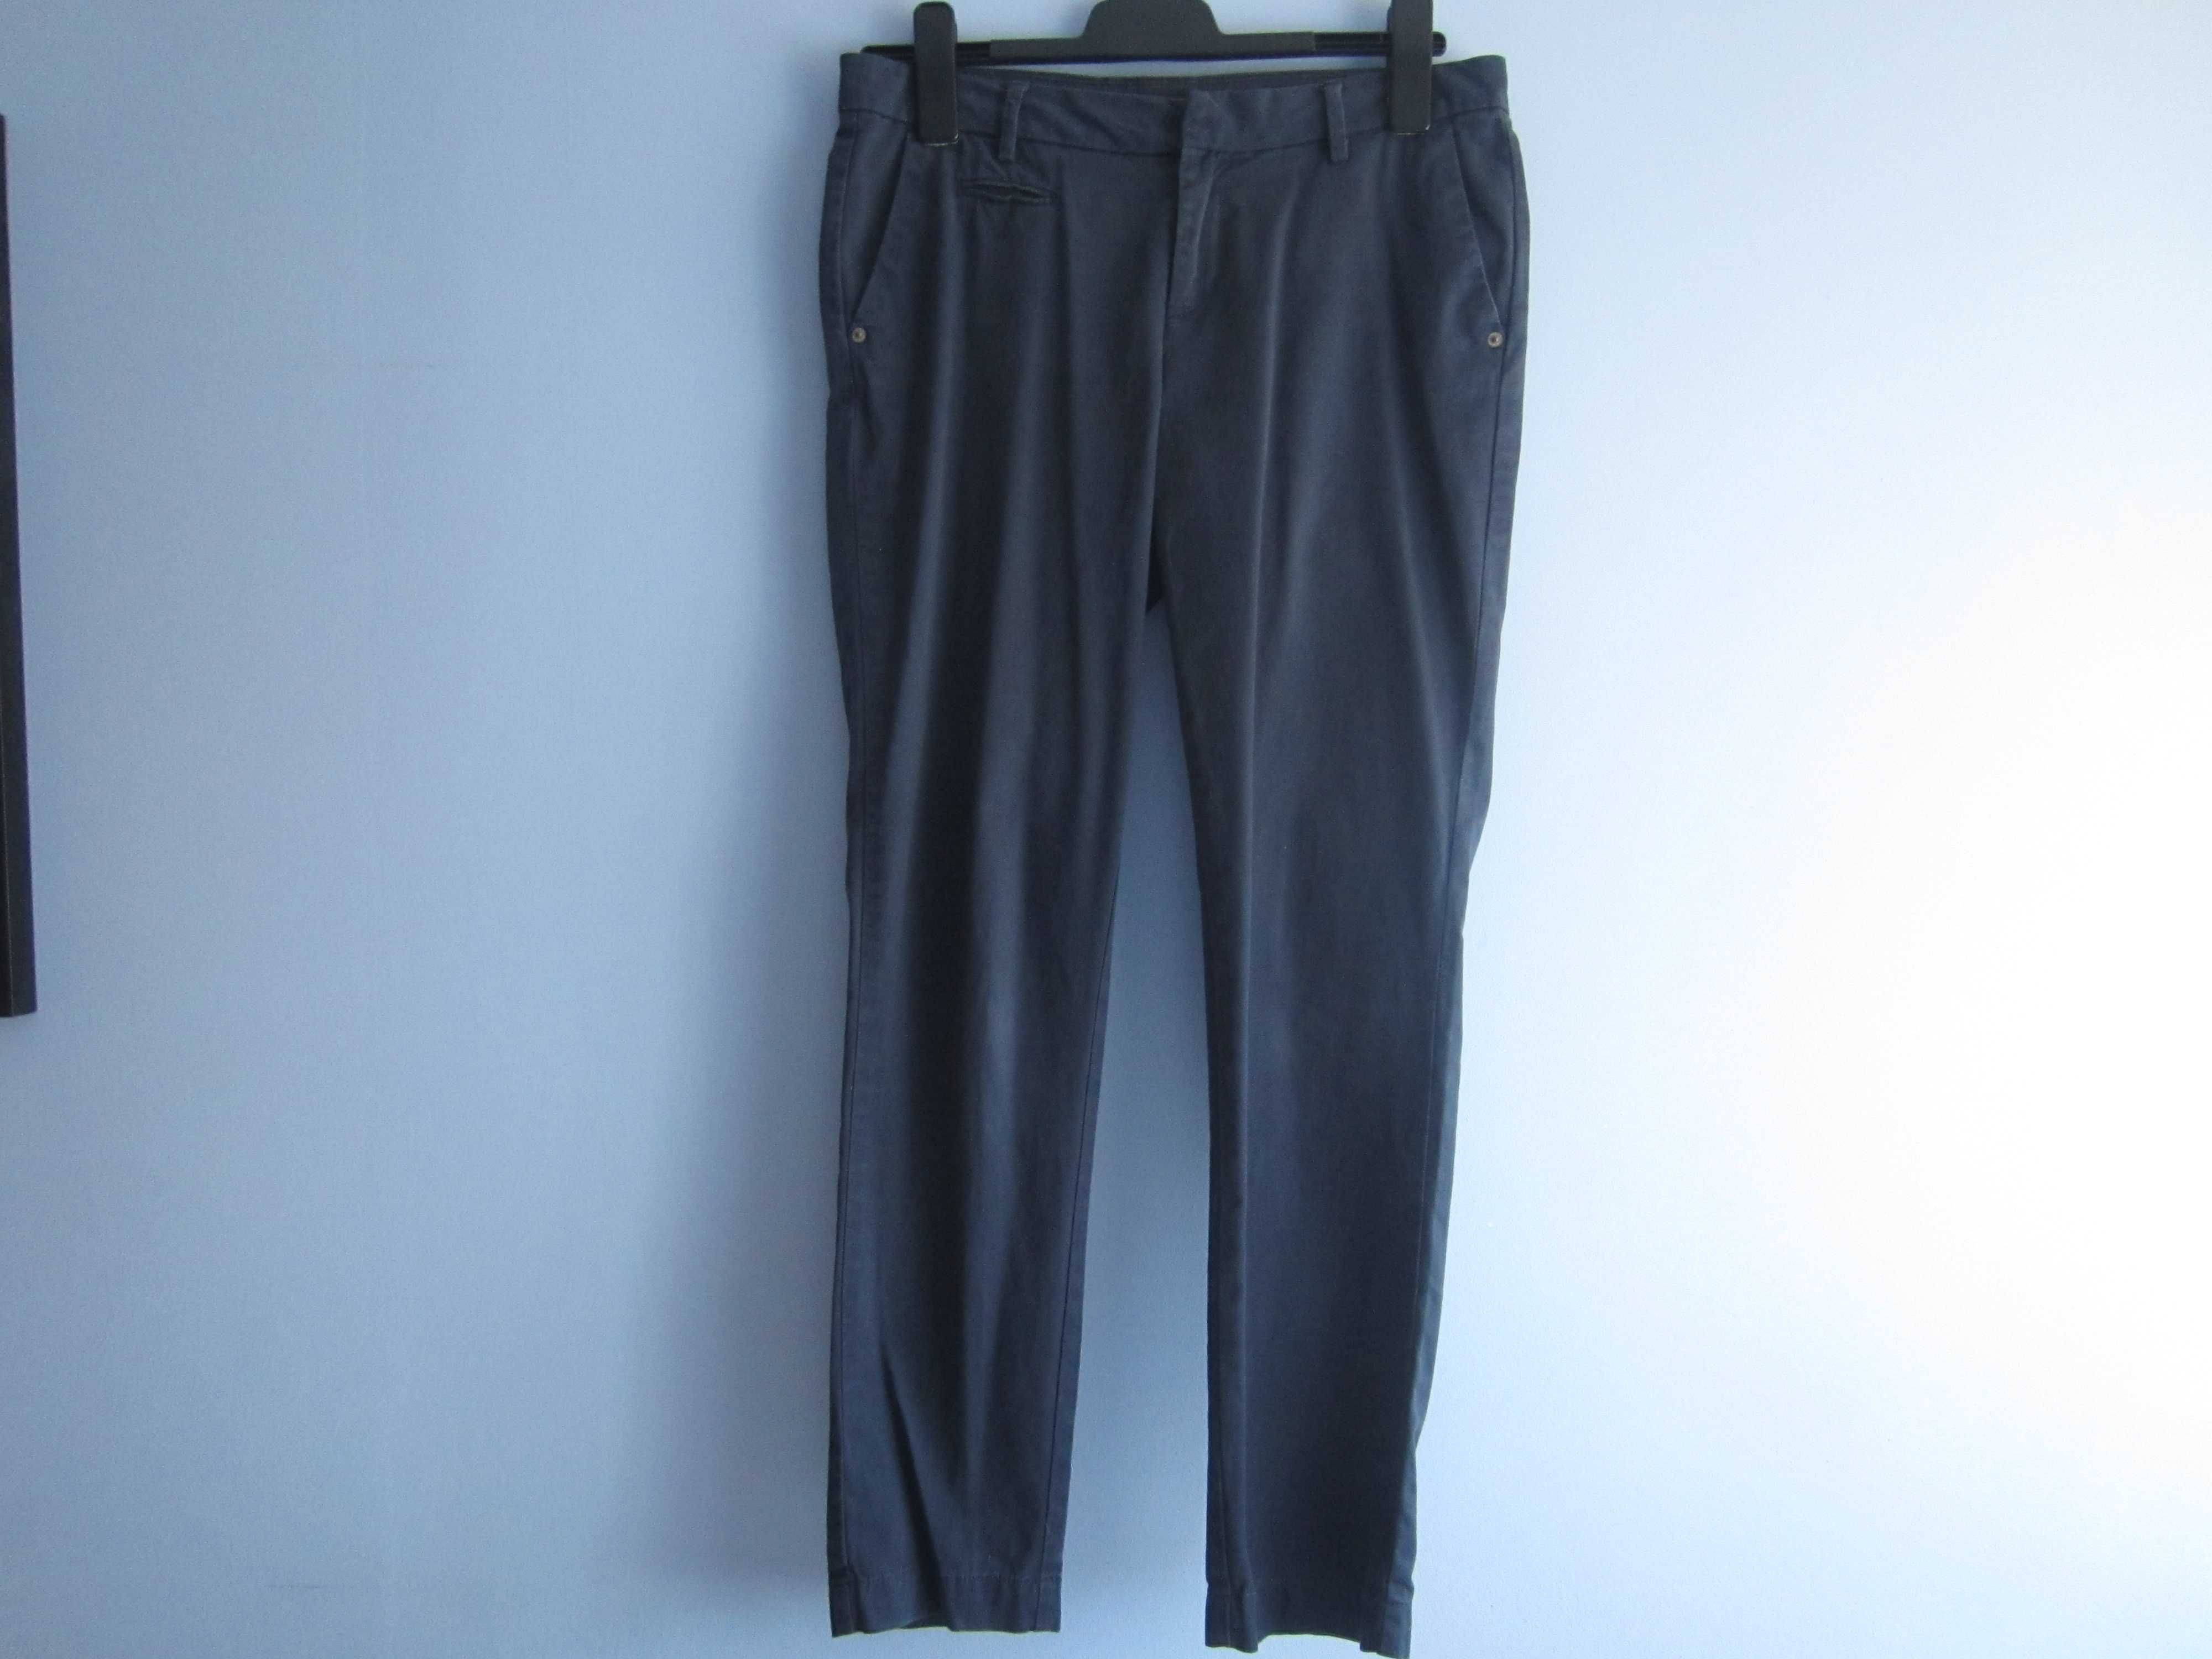 Granatowe eleganckie spodnie z Orsay, rozm. 36, bawełna super jakość